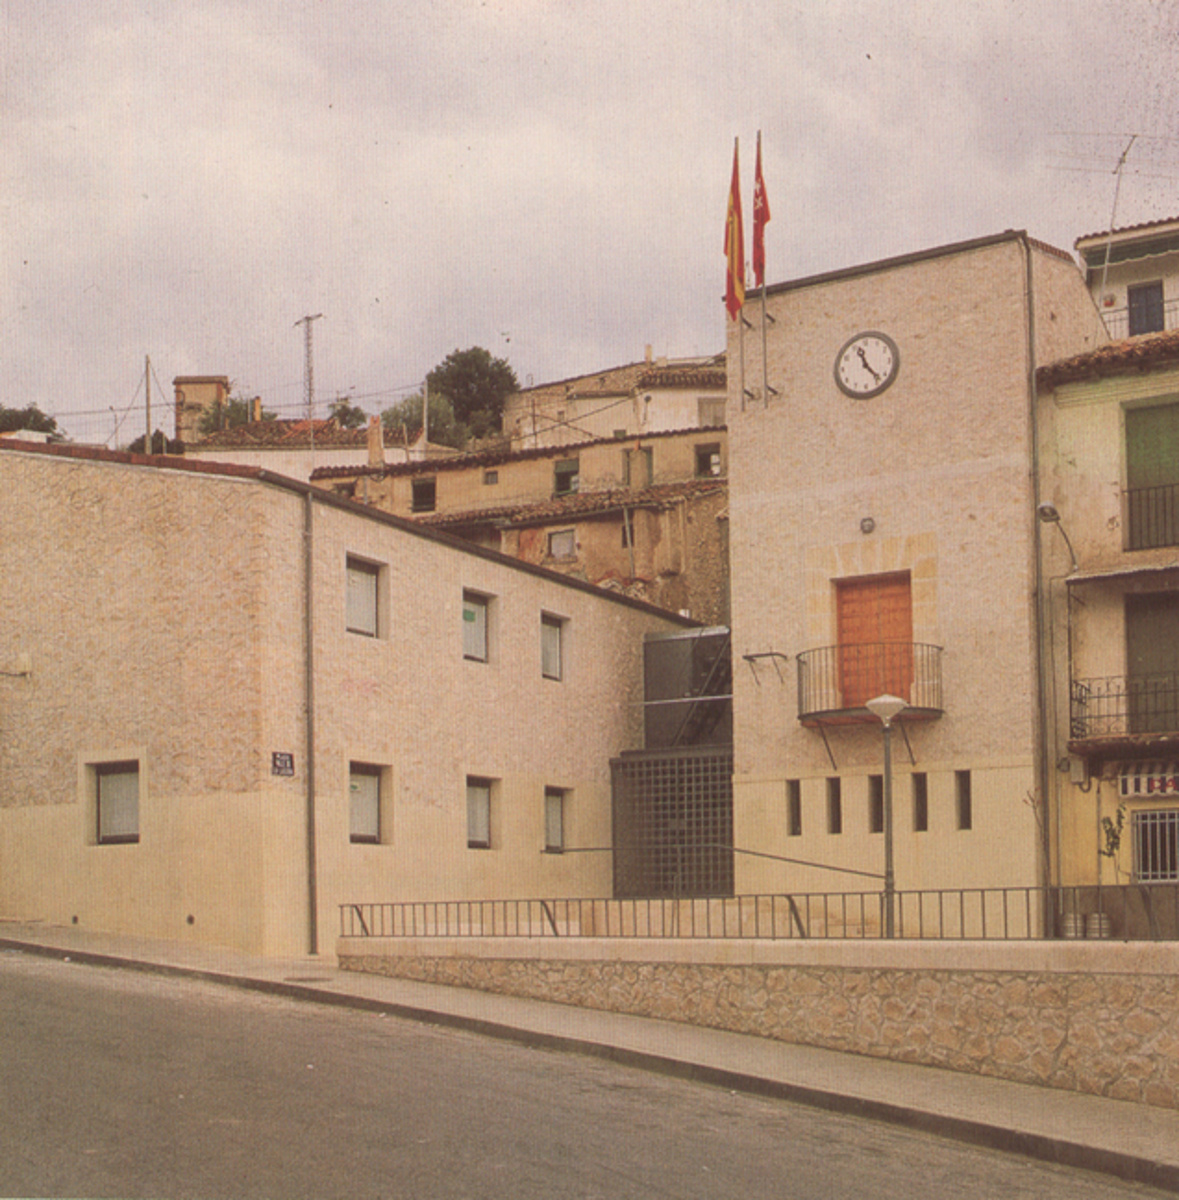  Valdelaguna Town Council